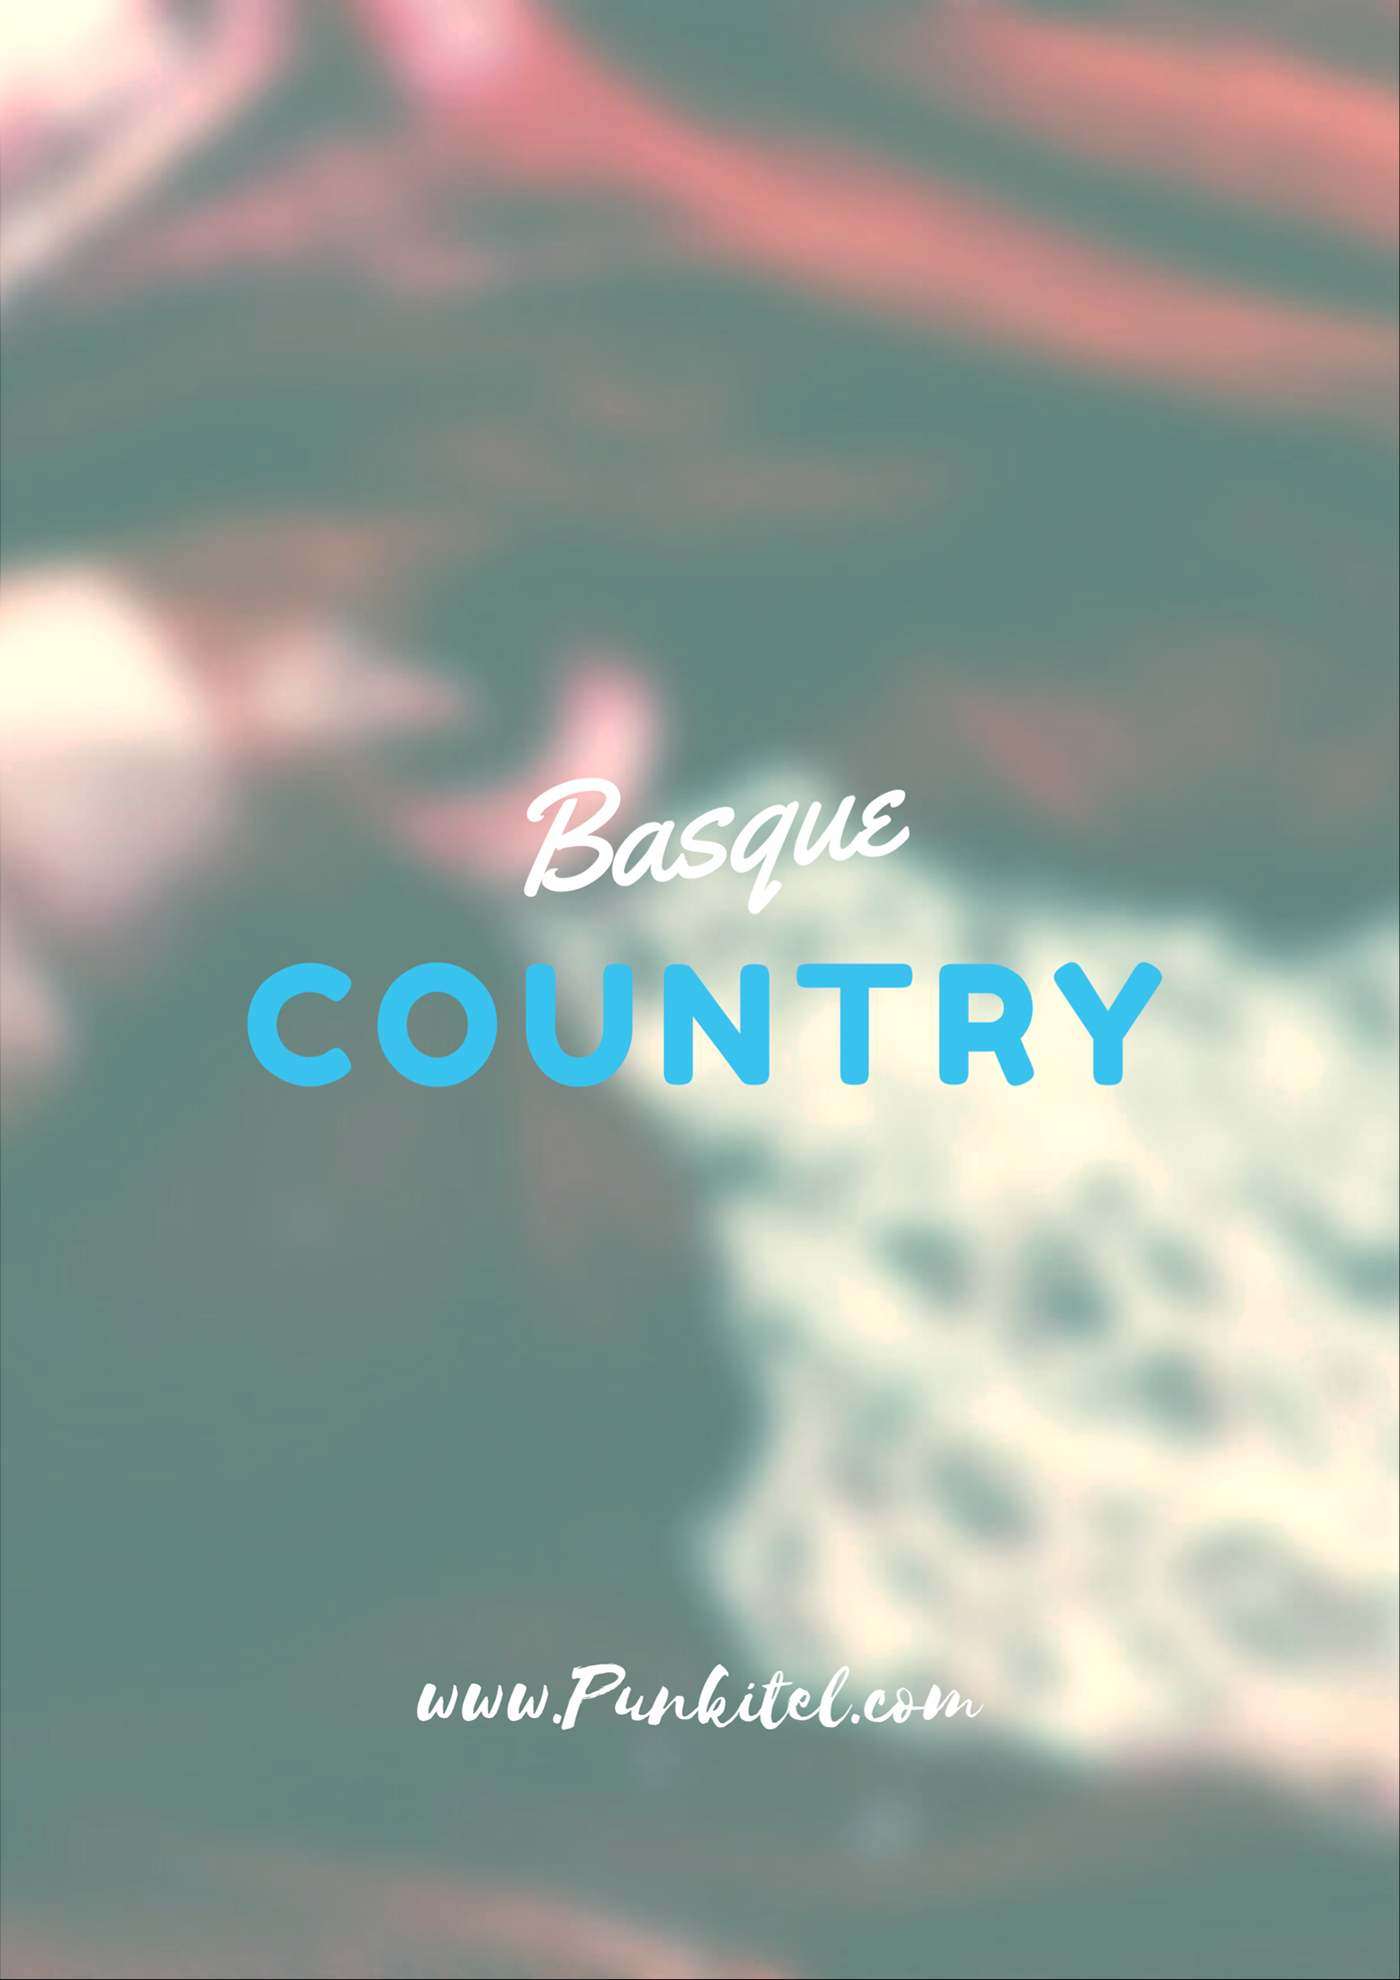 Fotografia basque country punkitel